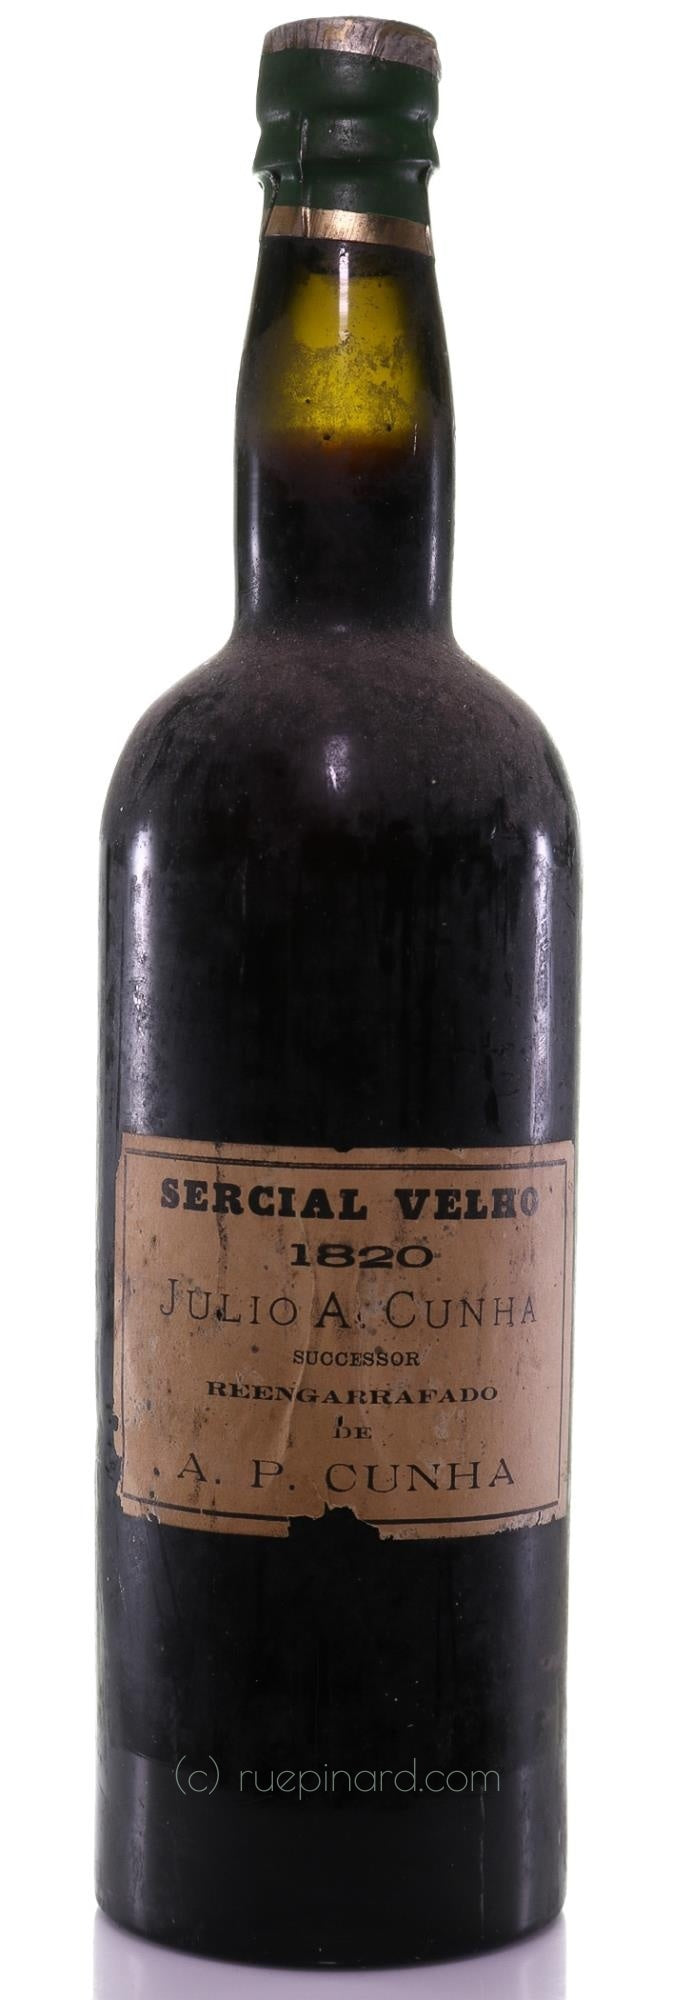 1820 Sercial Cunha Madeira, A.P. Cunha - Velho Madeira - Rue Pinard